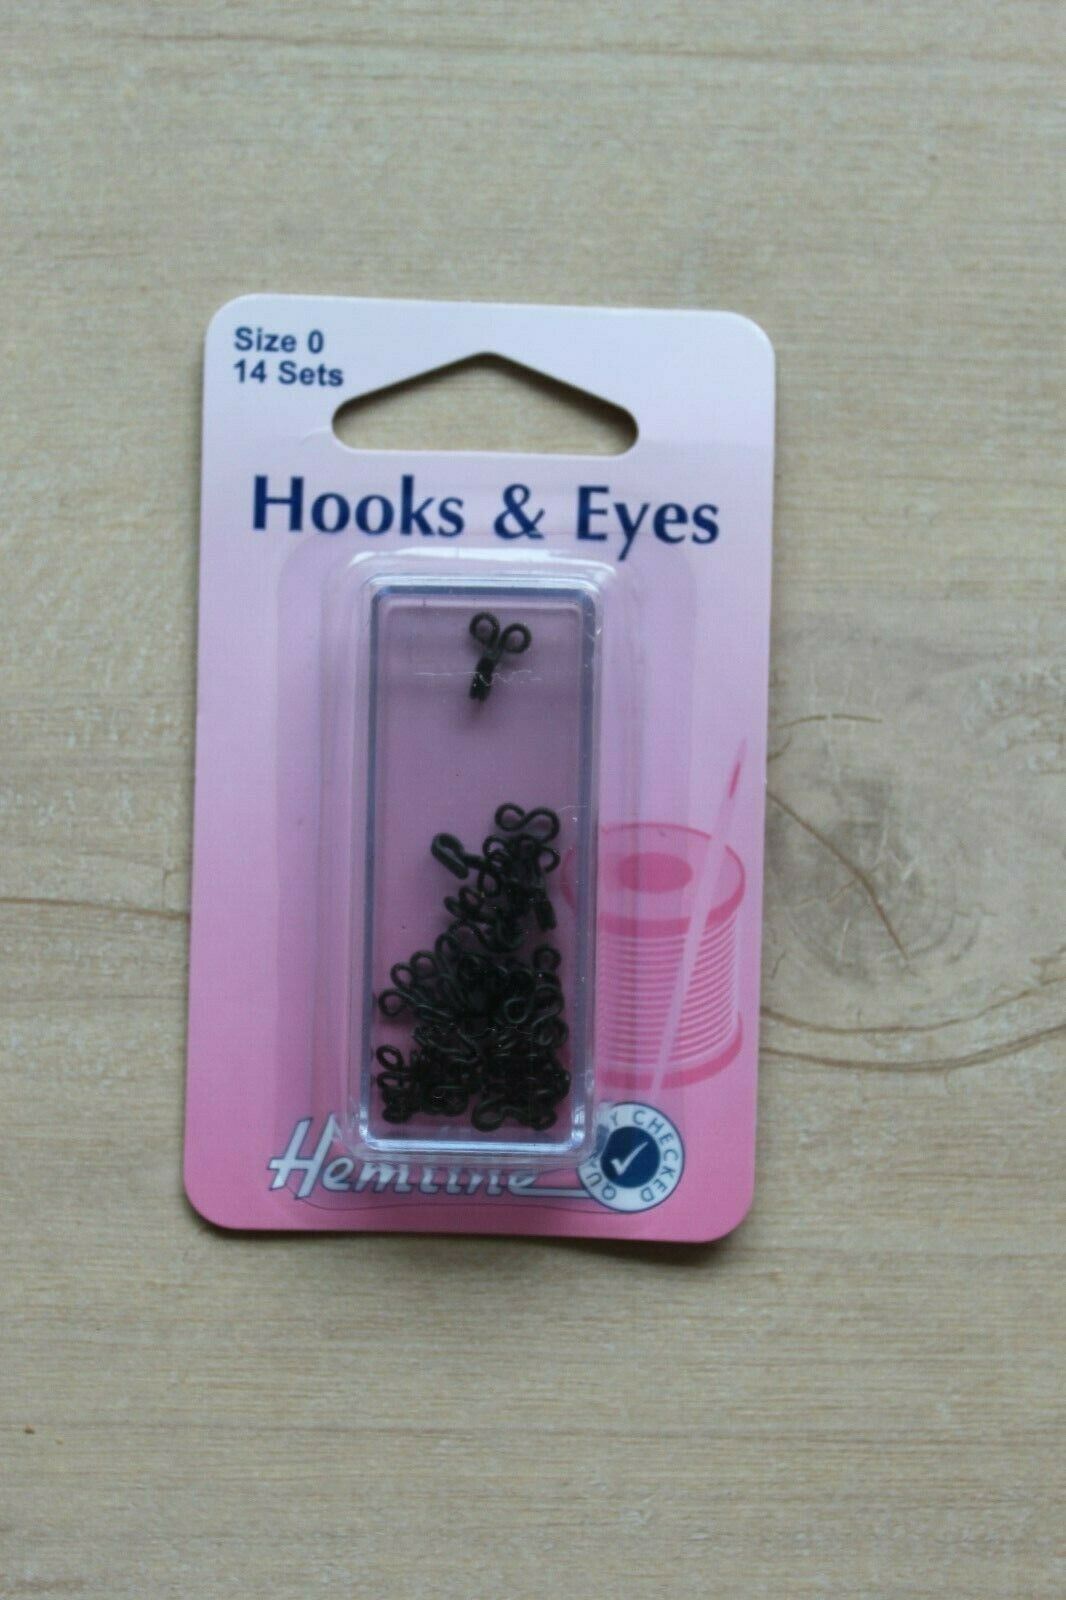 Hemline size 0 hooks and eyes - Black